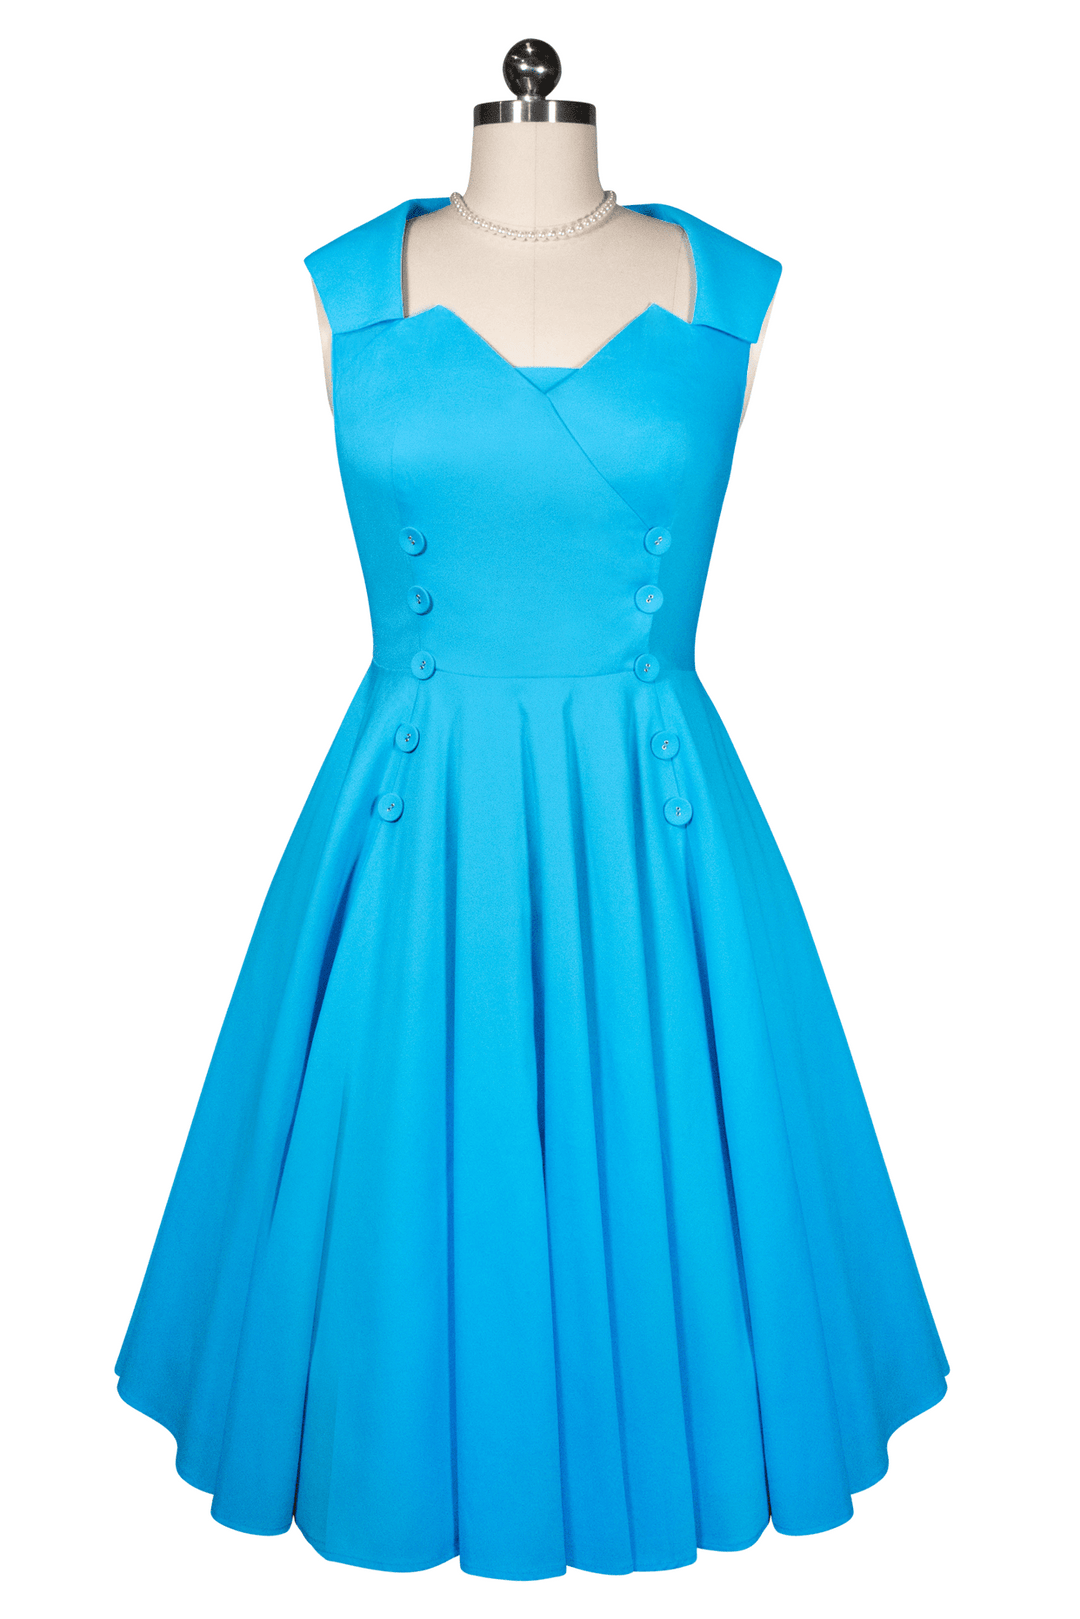 D'Amour Moonlight Cocktail Dress (Blue) - Kitten D'Amour